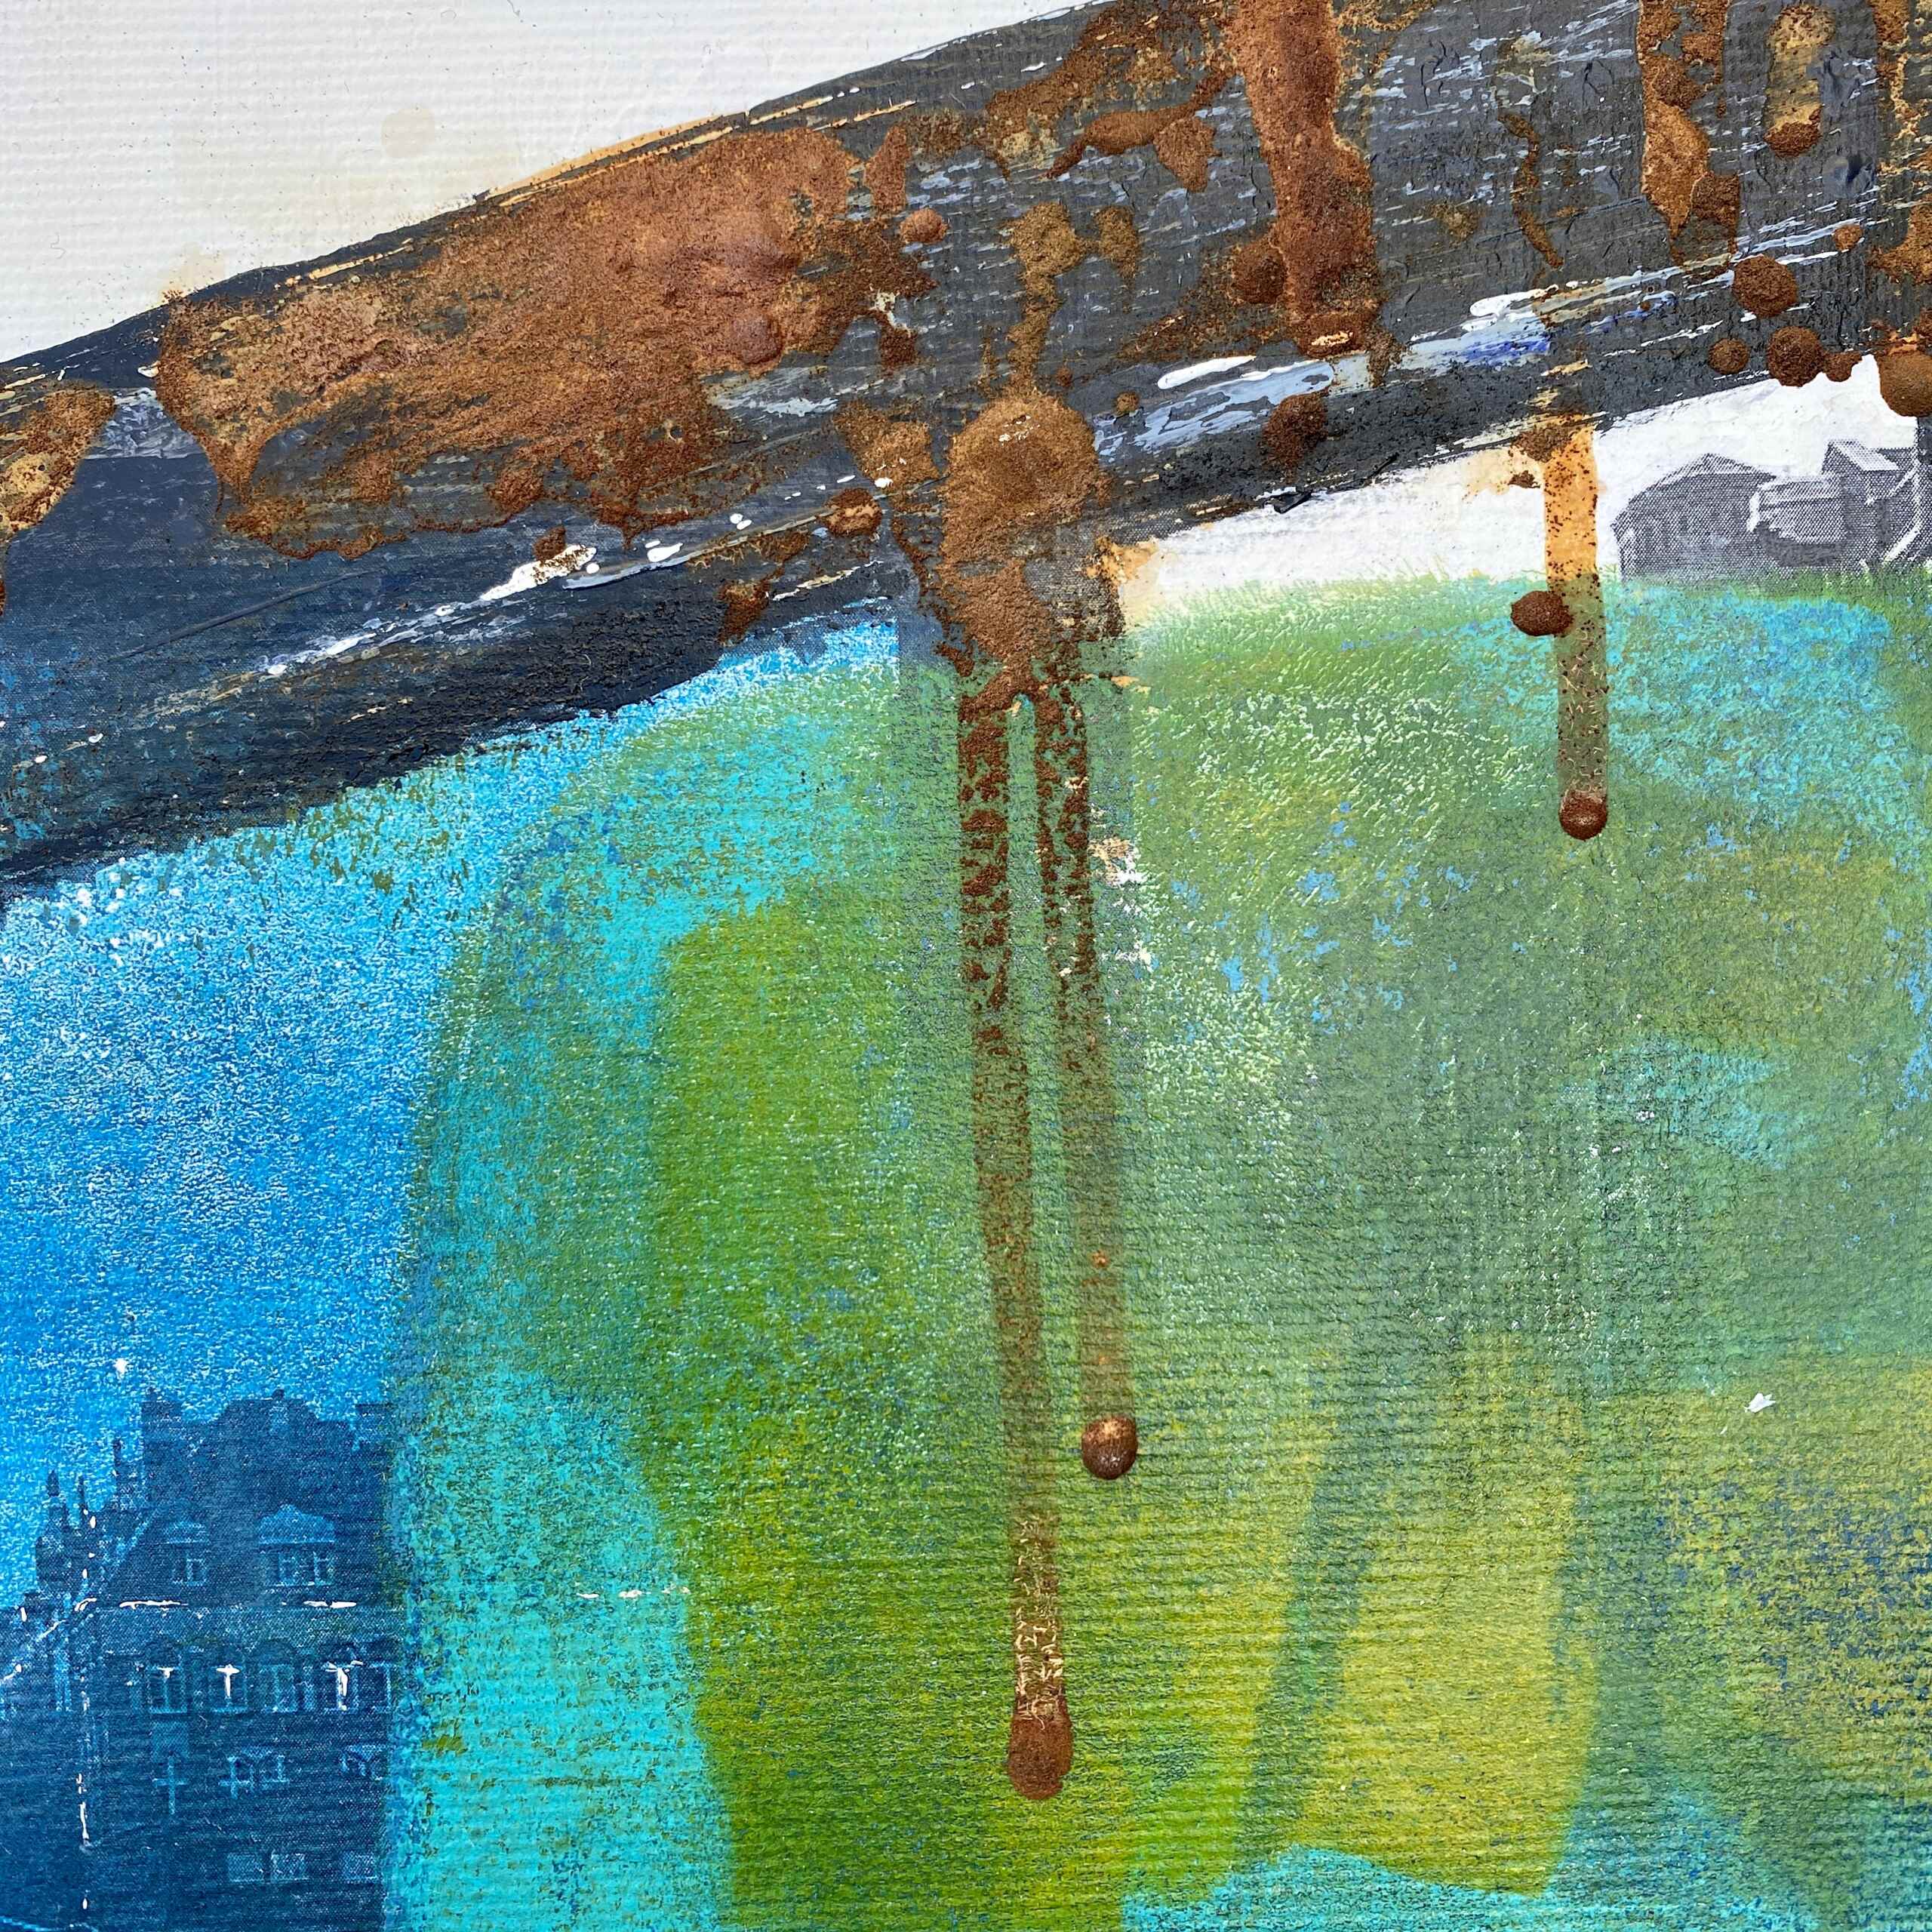 Detail of artwork "Bridges of Hamburg No 1” by Nina Groth